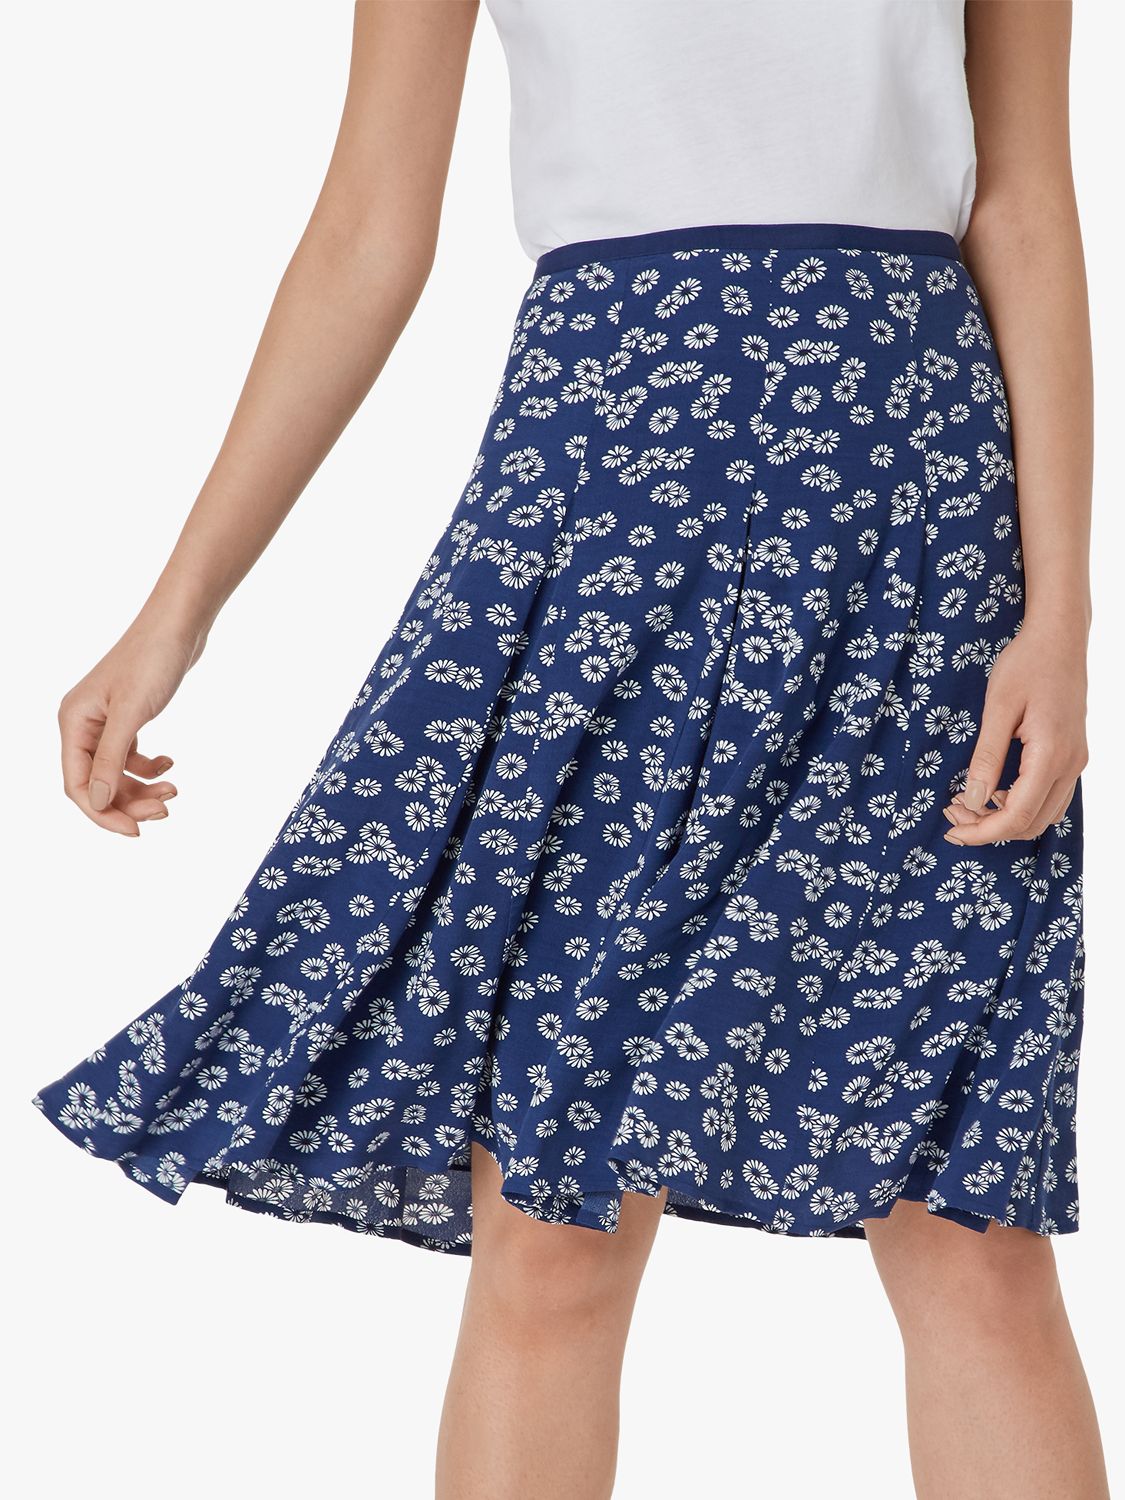 Hobbs Inez Floral Skirt, French Blue/Ivory